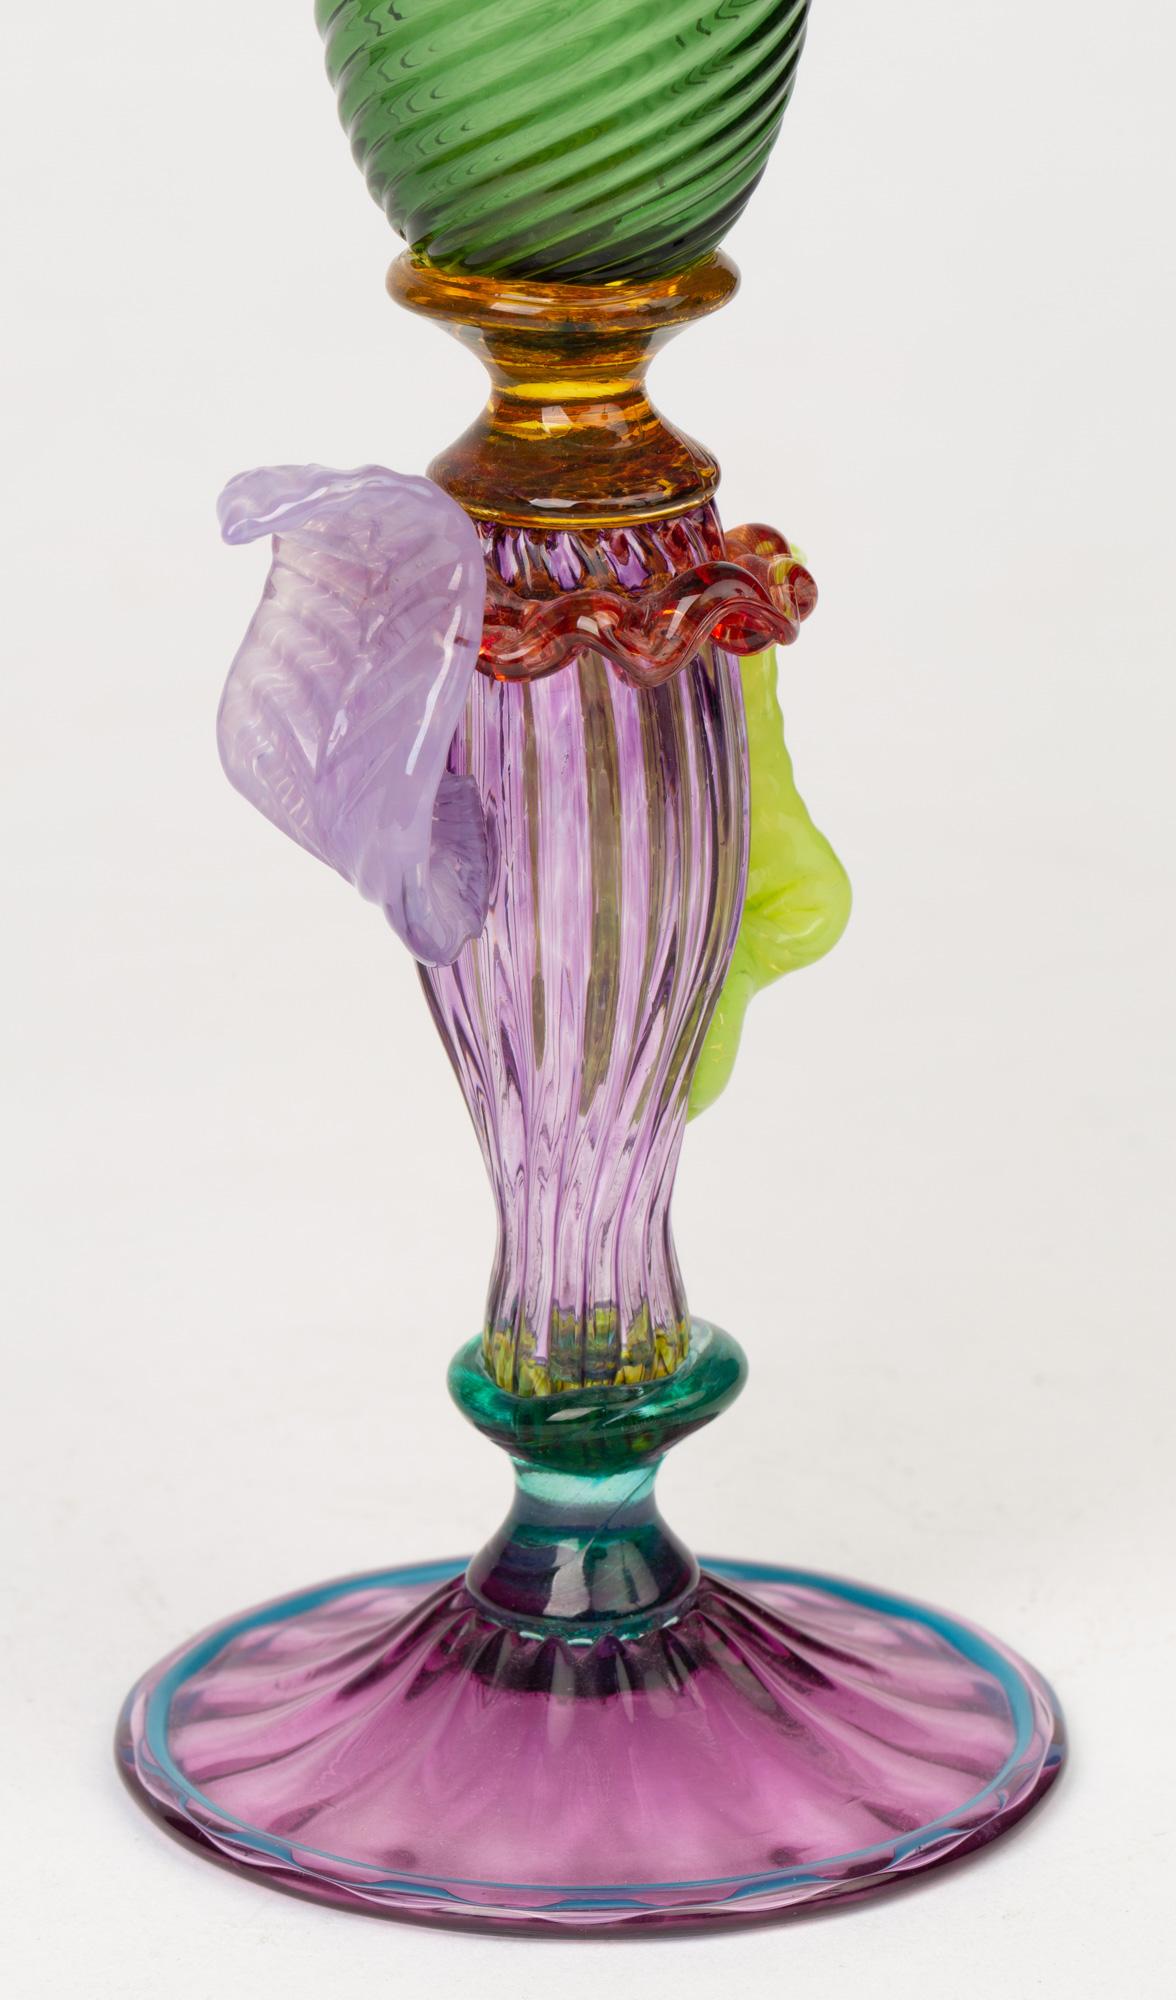 Renaissance Revival Antonio Salviati Antique Venetian Revival Art Glass Stem Vase For Sale